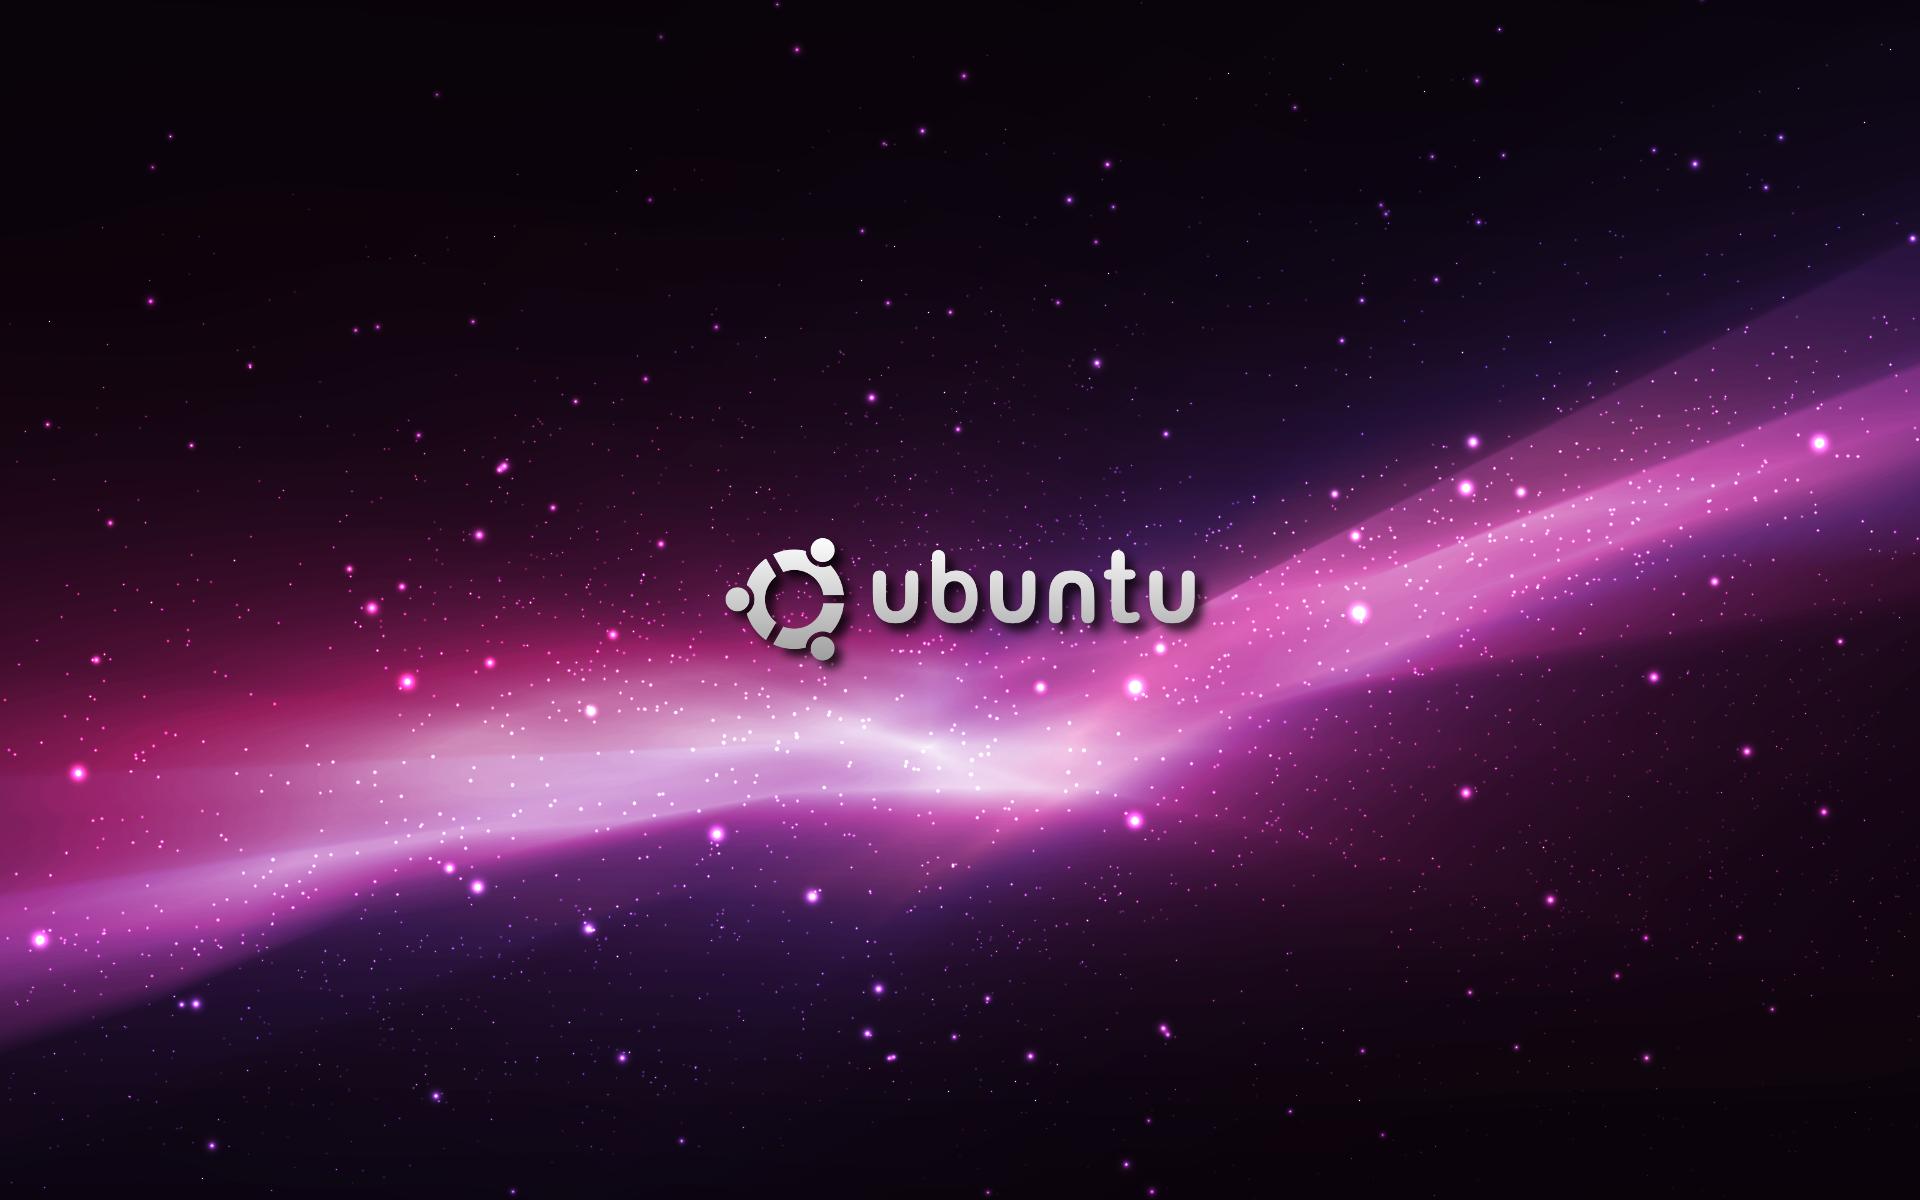 ubuntu wallpaper purple hd - HD Desktop Wallpapers | 4k HD